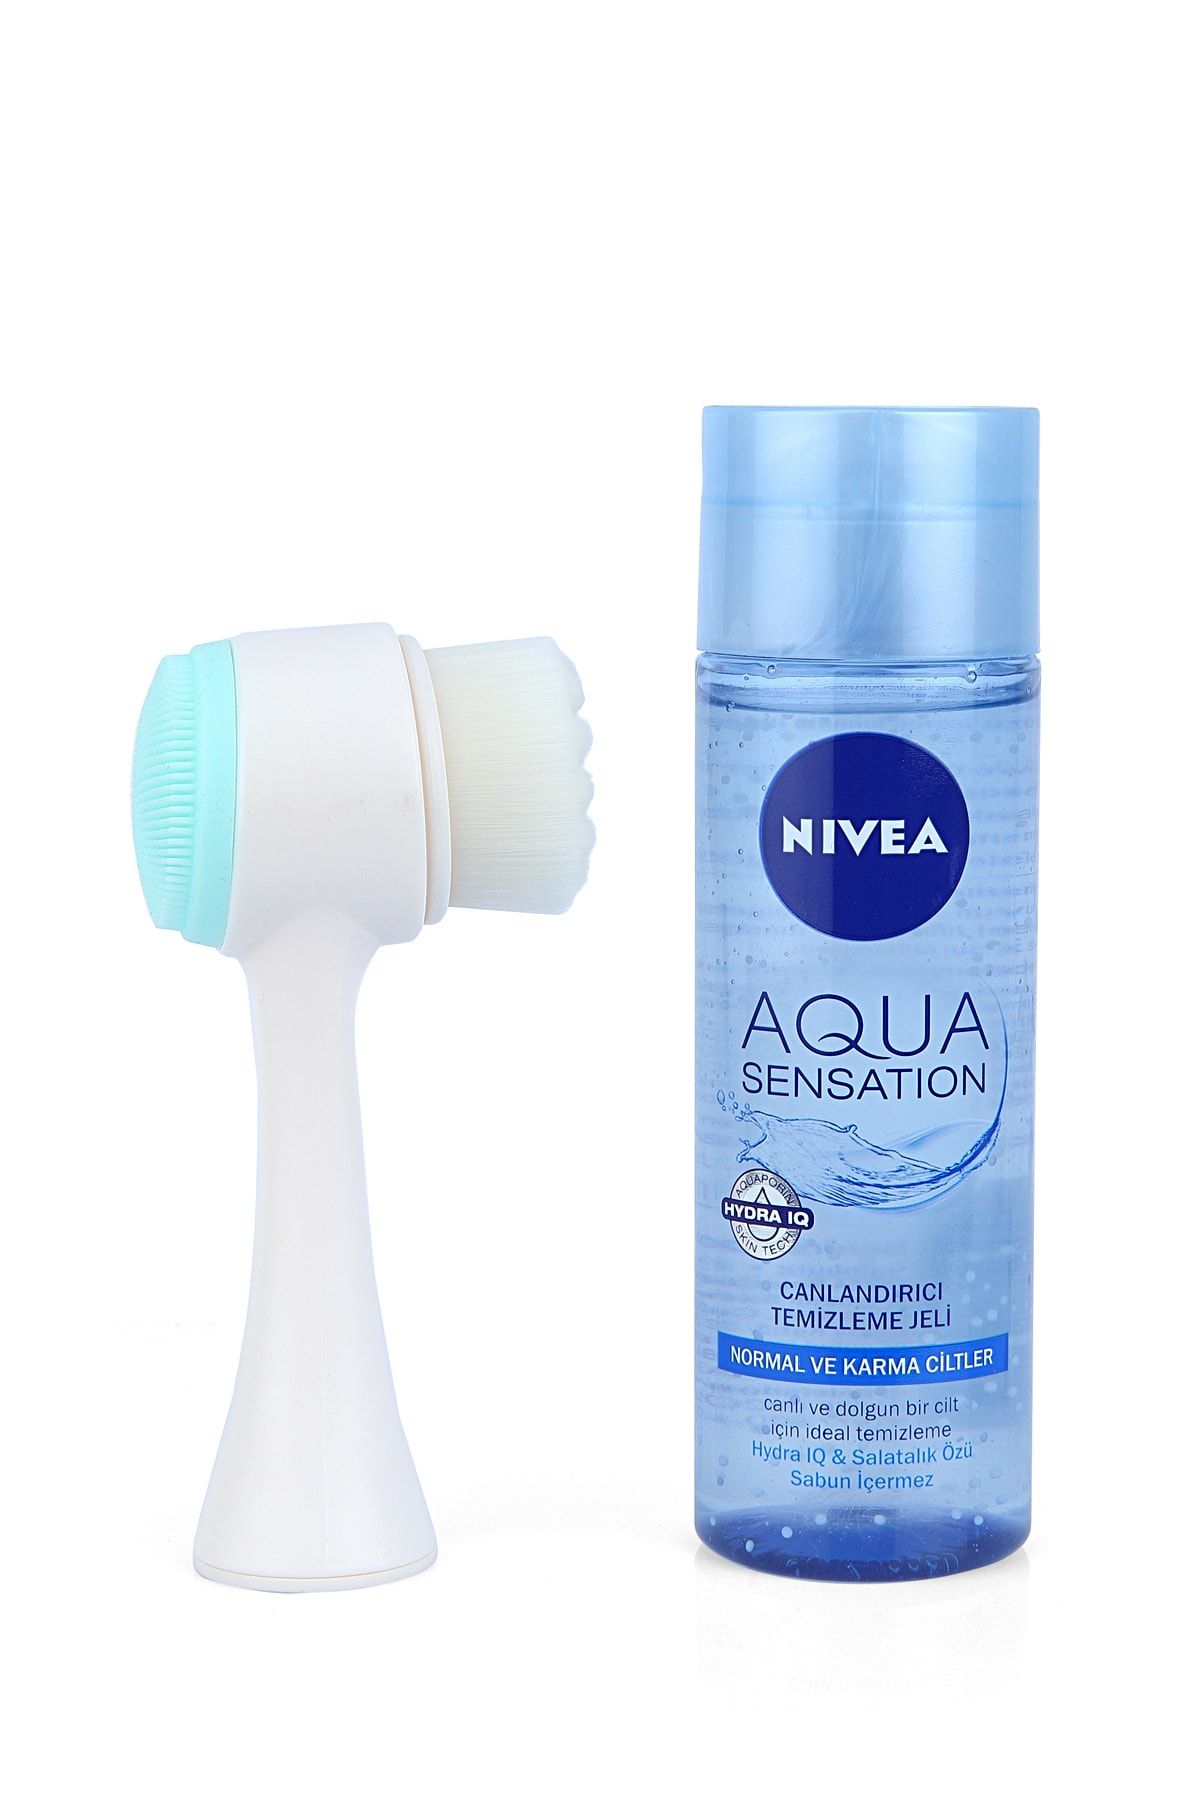 NIVEA Aqua Sensation Yüz Temizleme Jeli 200 ml + Yüz Temizleme Fırçası